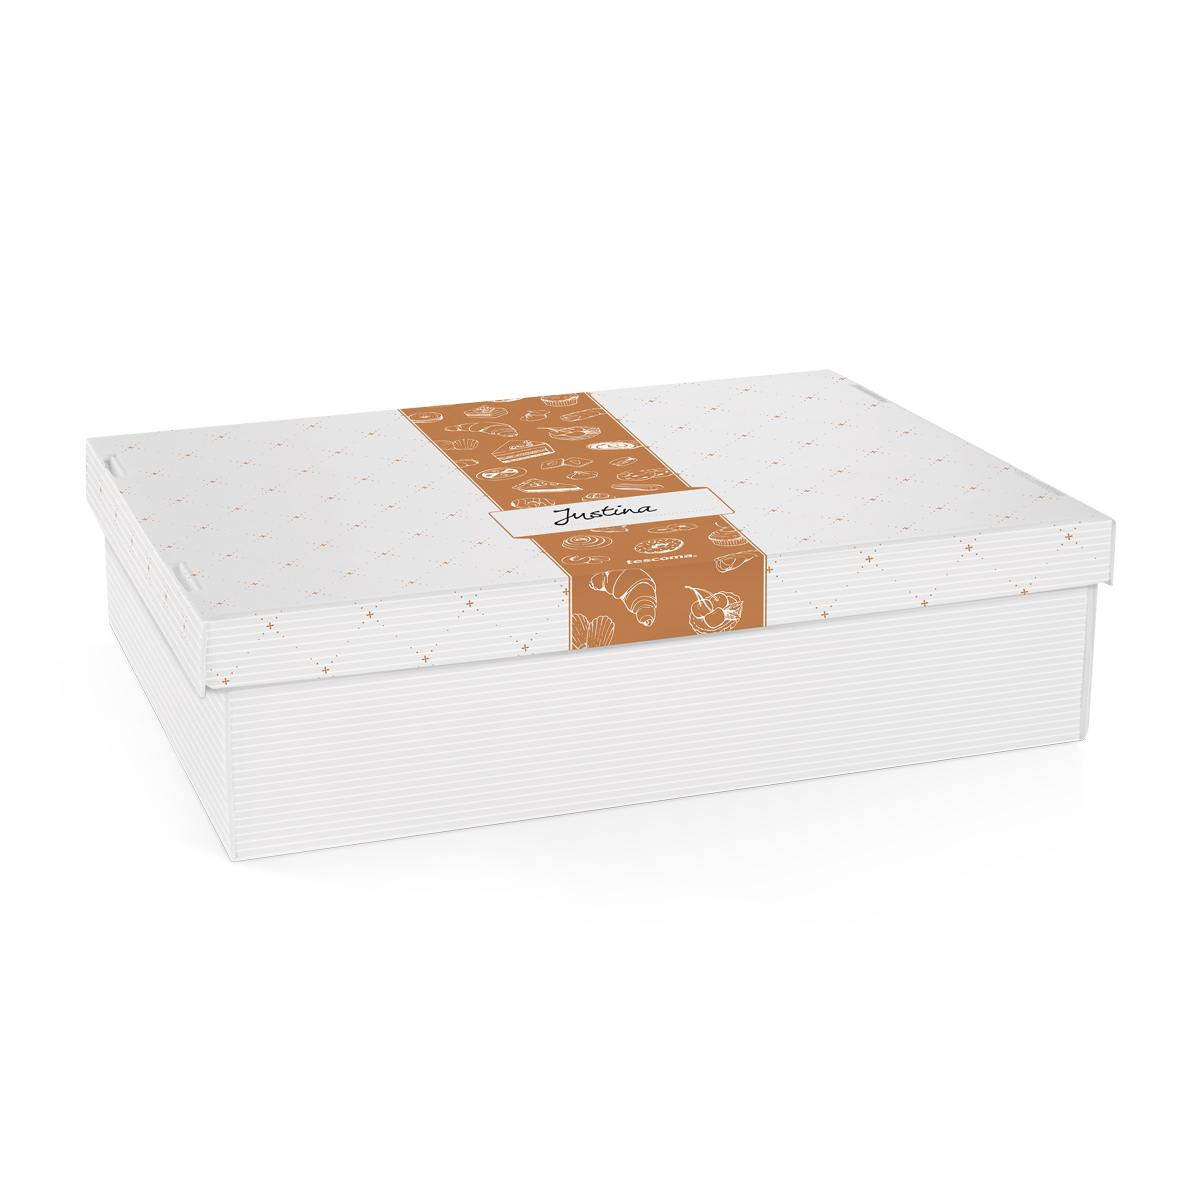 Krabice na cukroví a lahůdky DELÍCIA, 40 x 30 cm